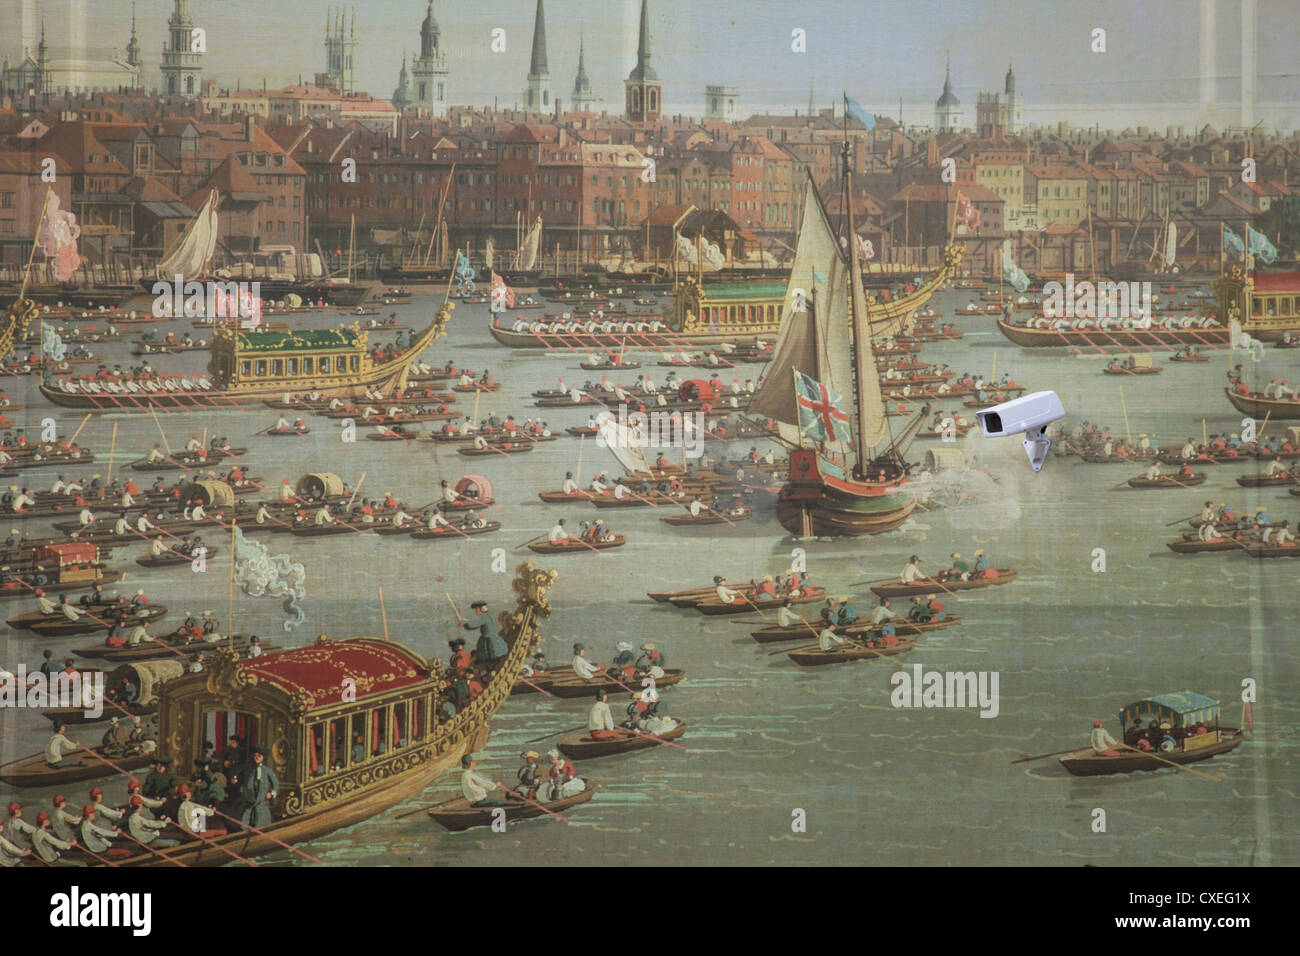 Ancien maître Canaletto thésaurisation de peinture avec des caméras de vidéosurveillance. Londres, Royaume-Uni. Banque D'Images